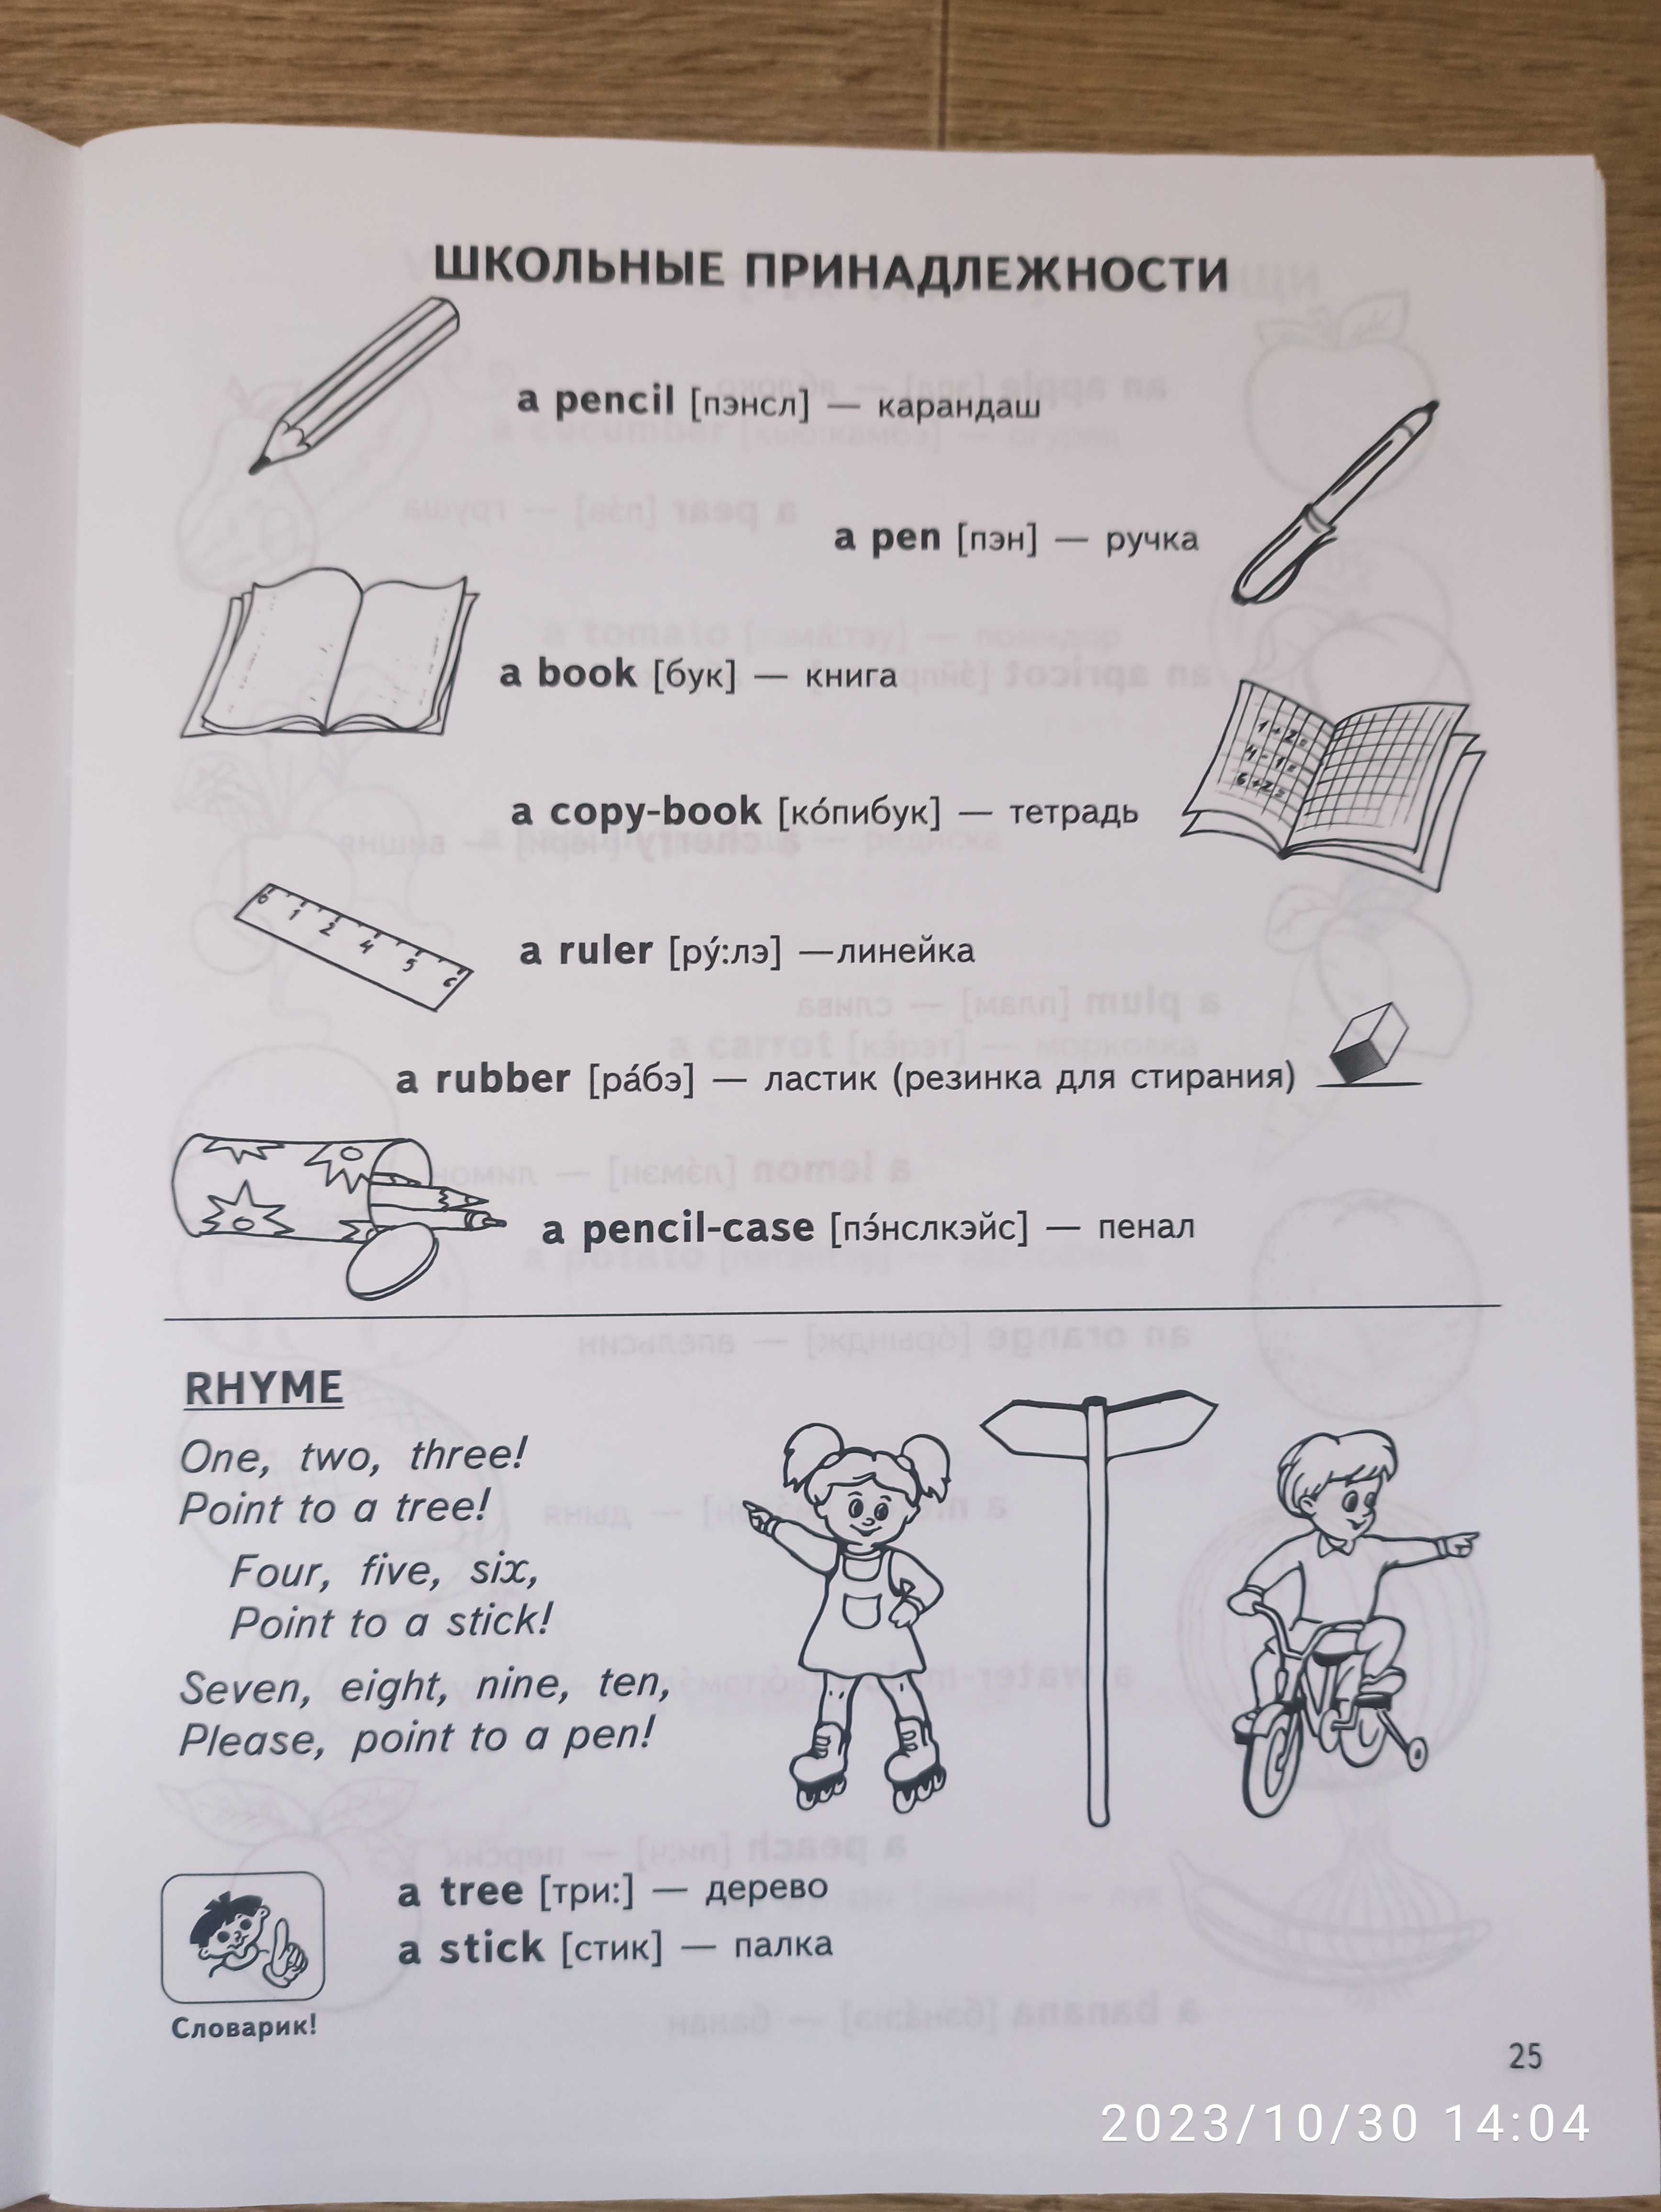 Easy English В. Федиенко английский язык для 4-7 лет.